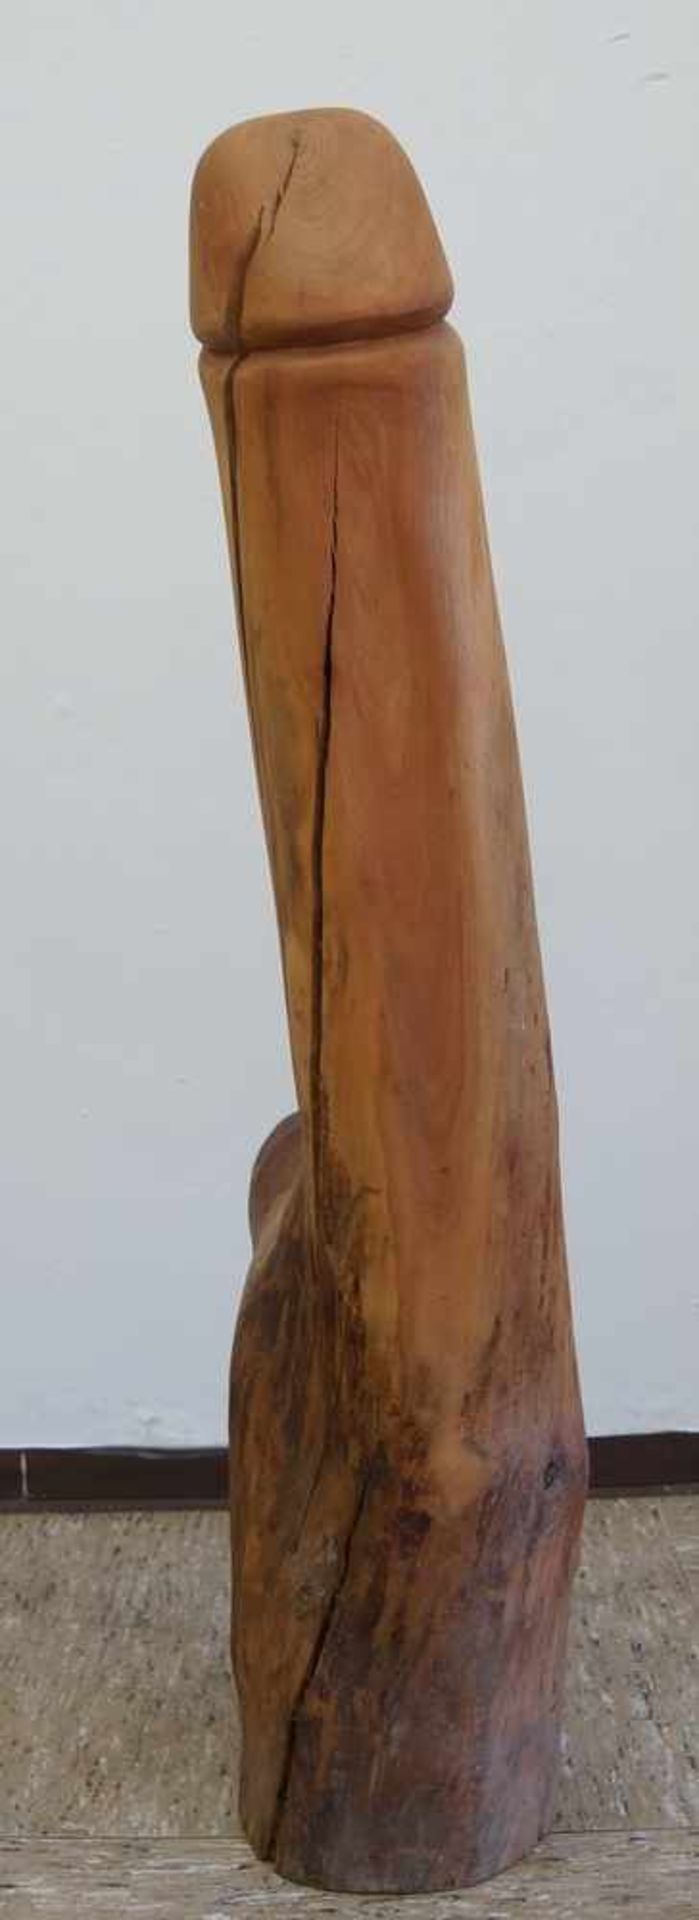 Übergrosser Phallus aus einem Stamm geschnitzt, H 91cm - Bild 5 aus 5